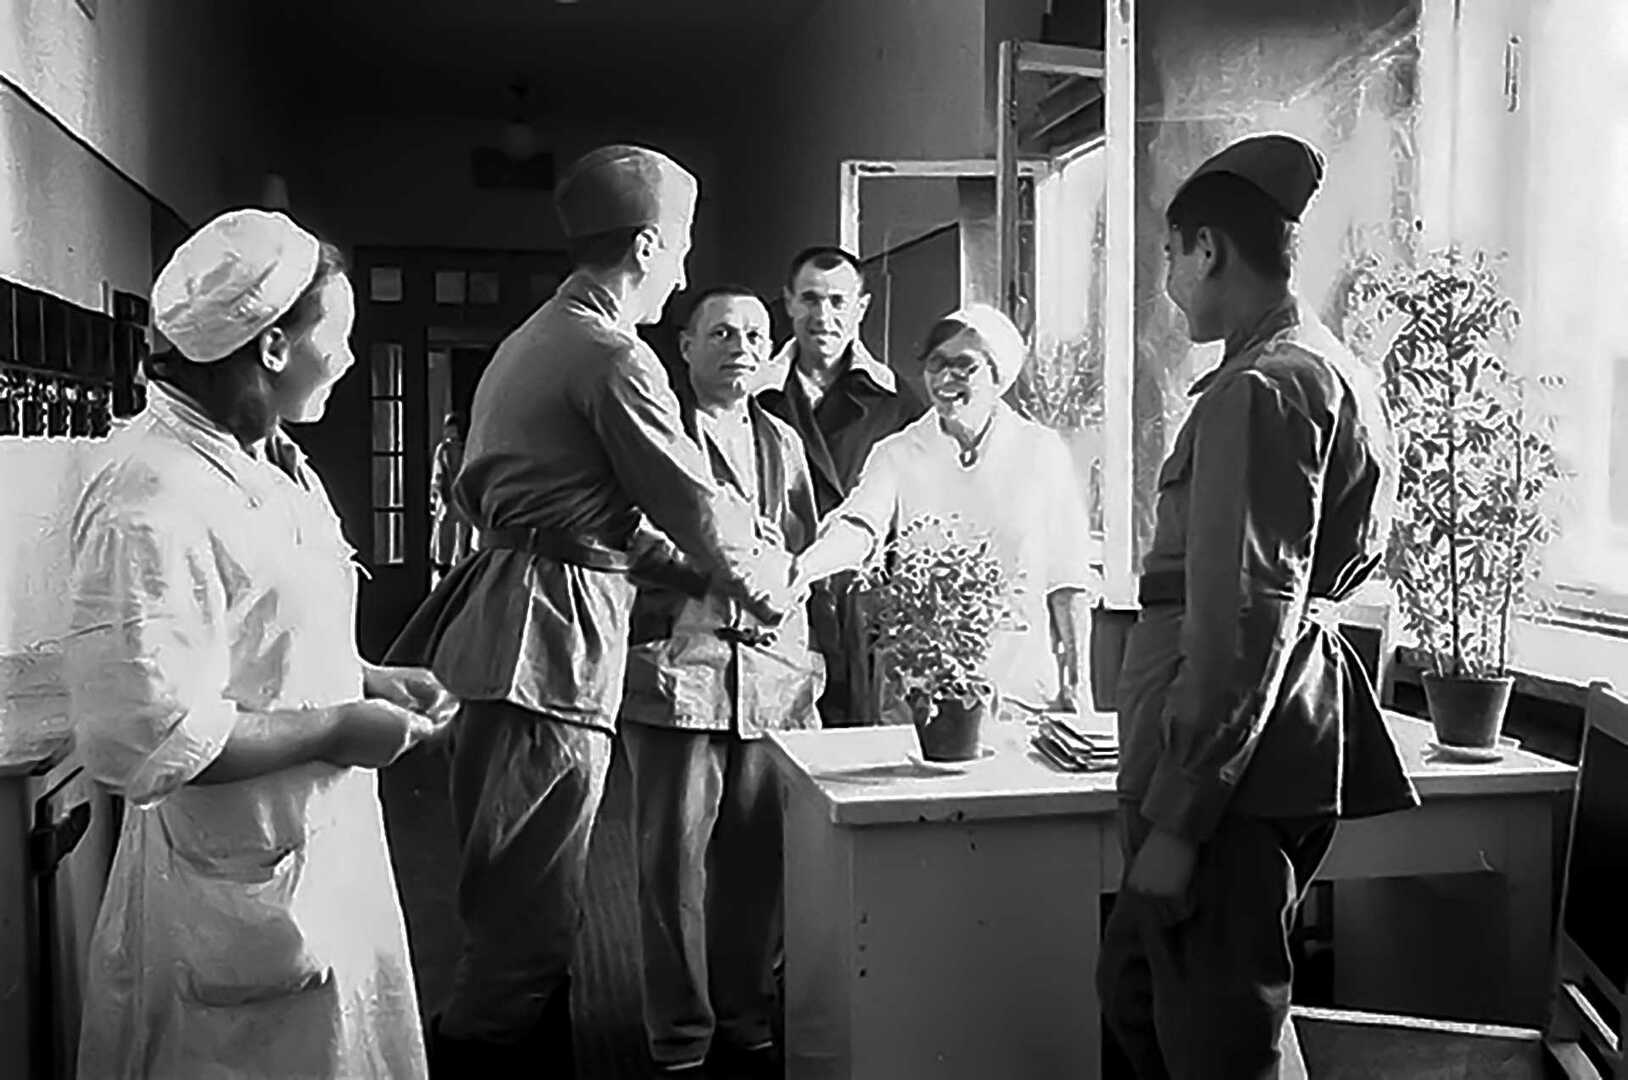 Гусева фронтовая медсестра. Госпиталь в годы войны 1941-1945.